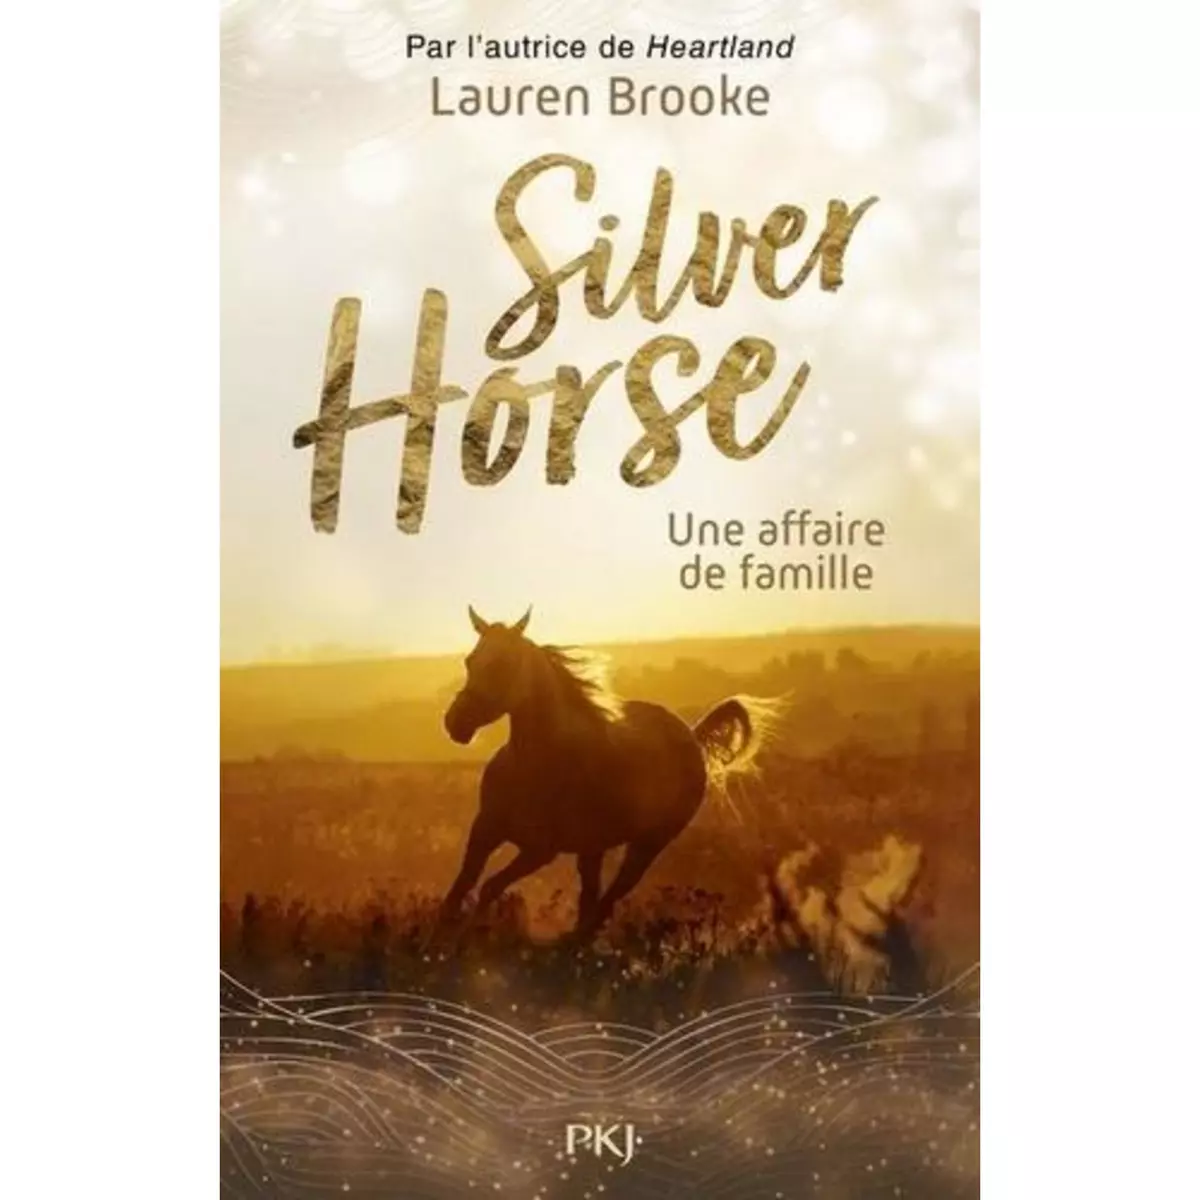  LE RANCH DE SILVER HORSE TOME 4 : UNE AFFAIRE DE FAMILLE, Brooke Lauren